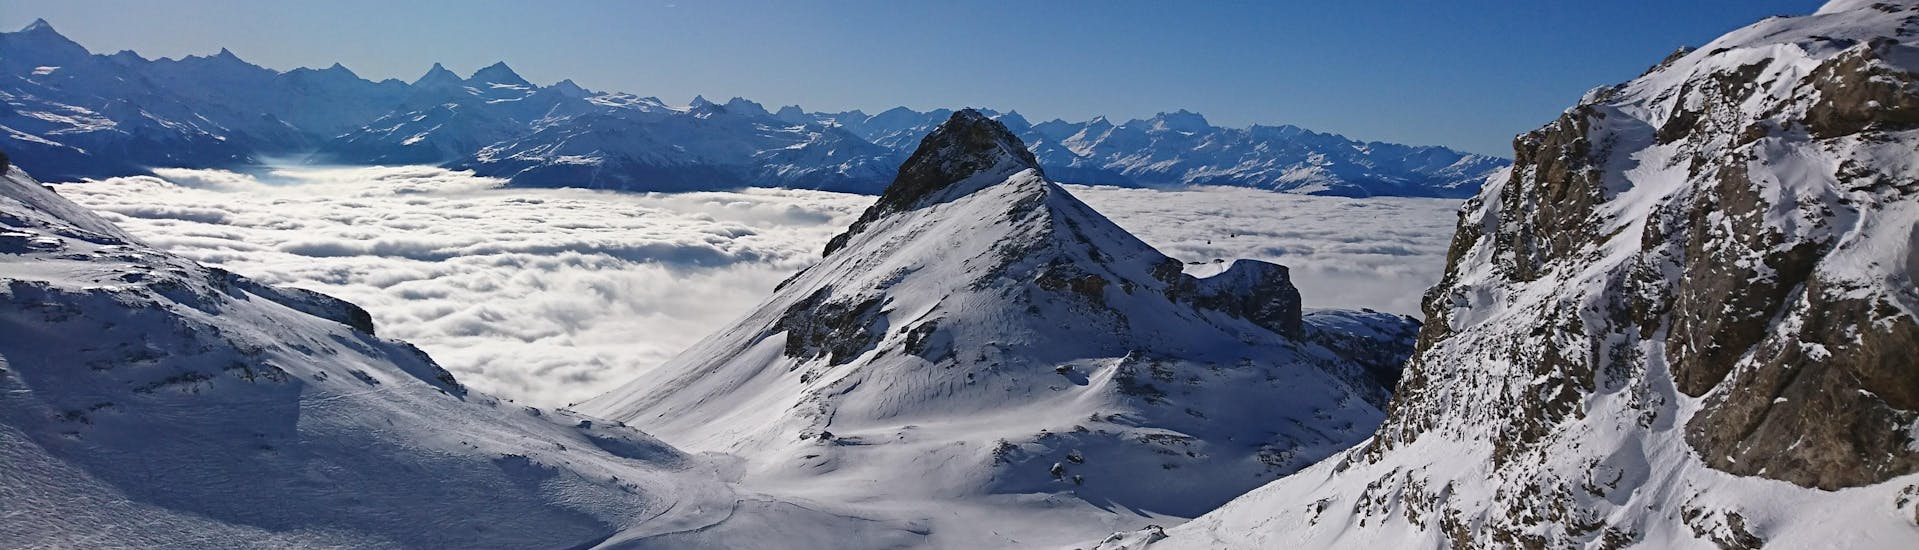 Blick auf die alpine Landschaft und die Pisten von Crans-Montana, wo die örtlichen Skischulen ihre Skikurse anbieten.